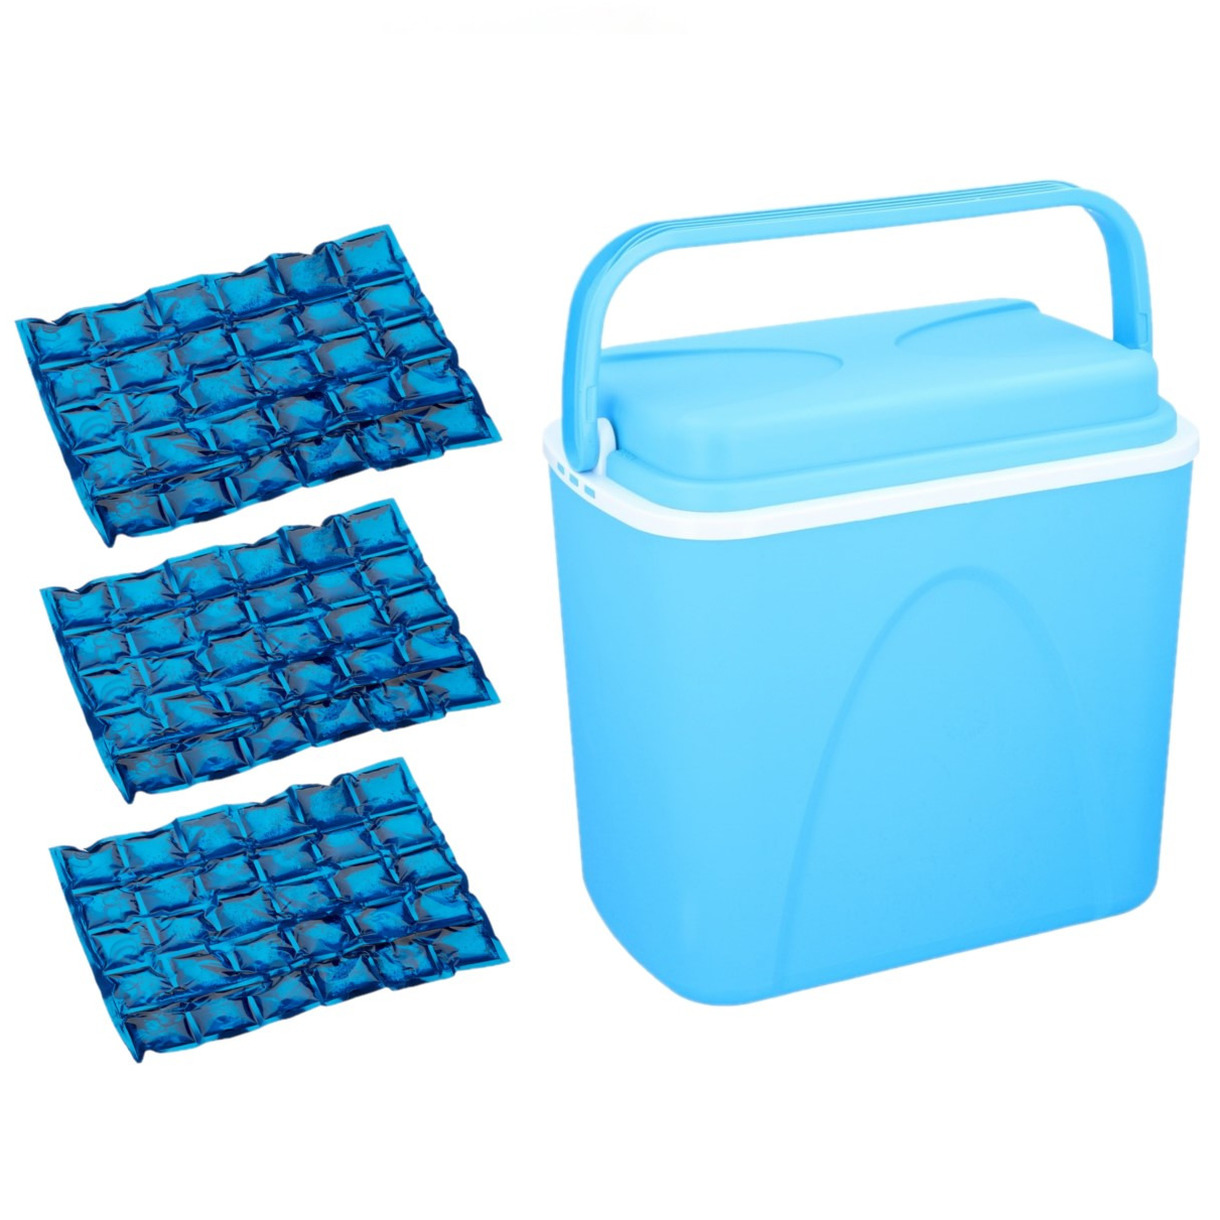 Voordelige flexibele blauwe koelbox 24 liter met 3x flexibele koelelementen